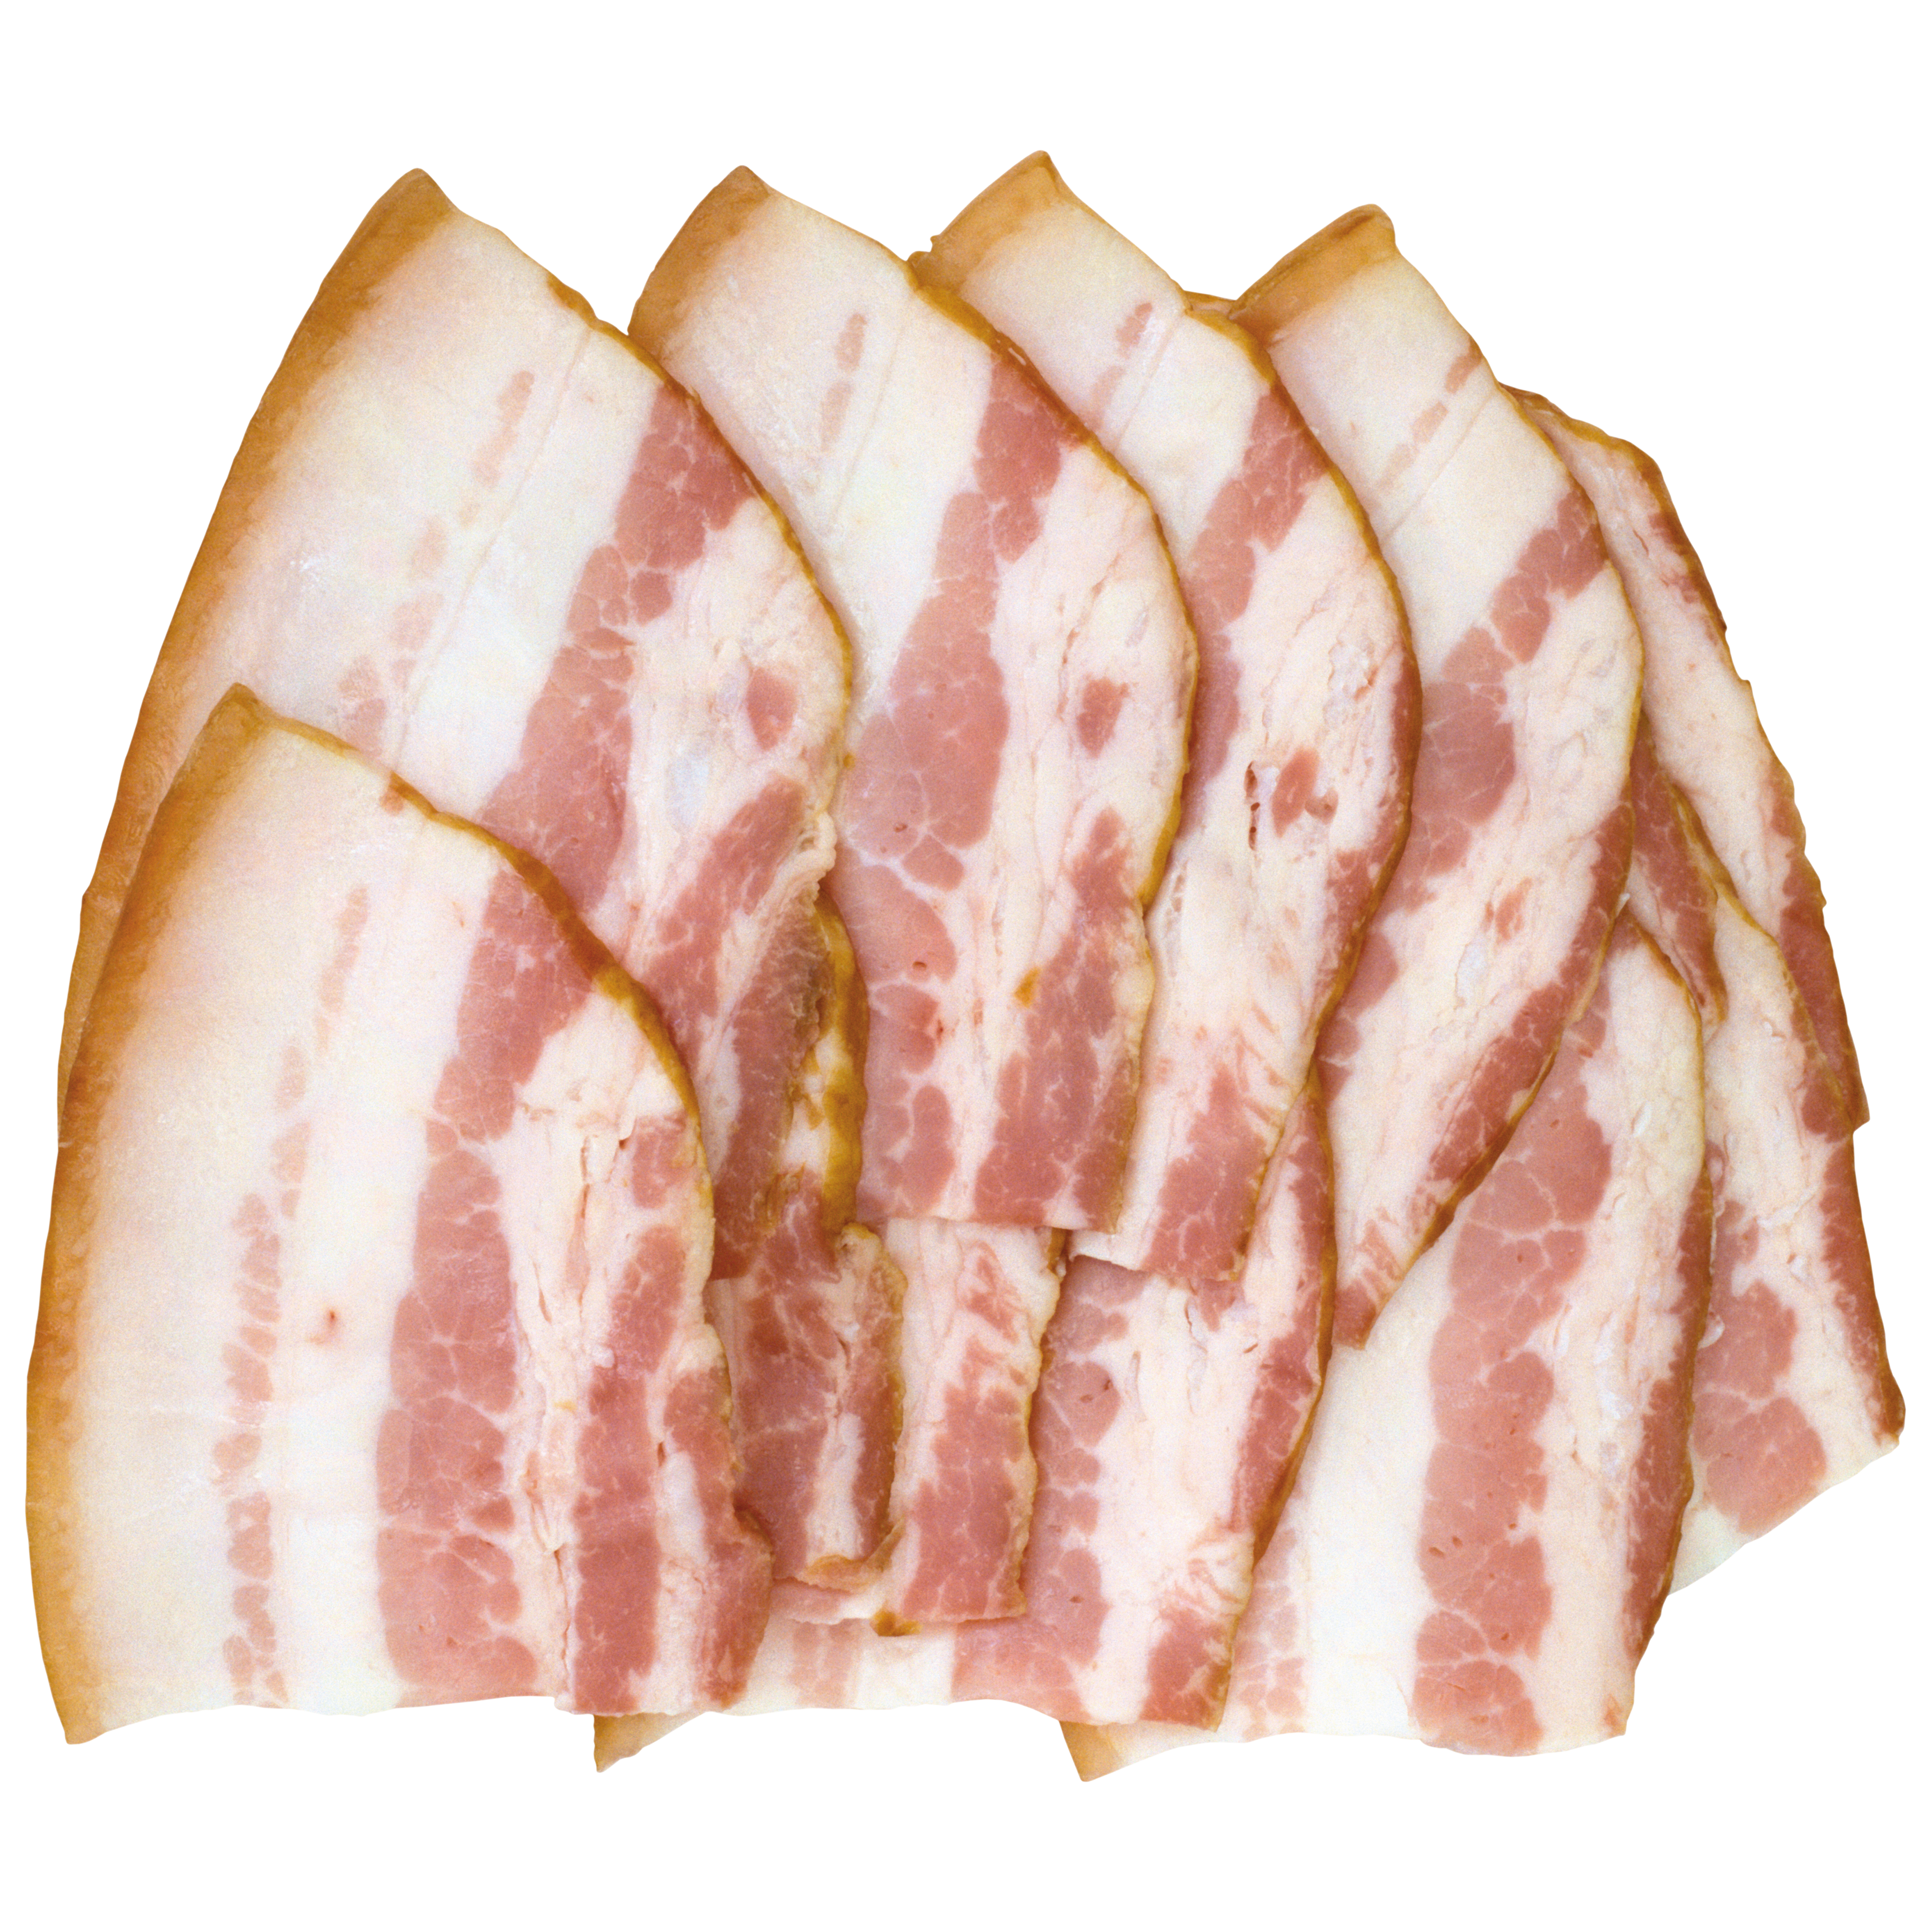 Bacon Transparent Picture